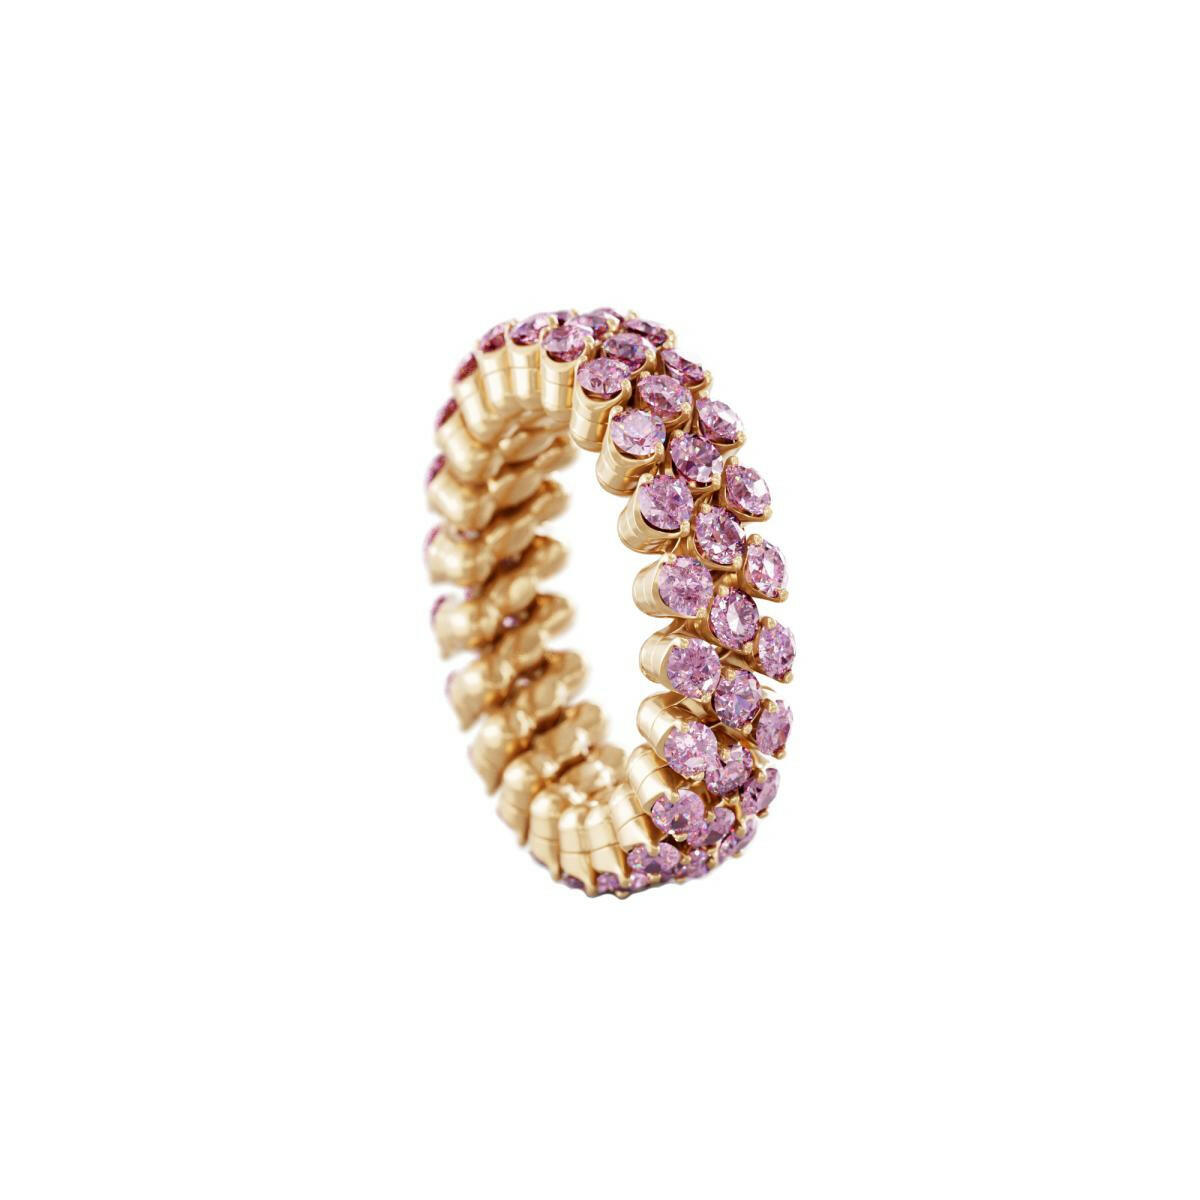 Brevetto Multi-Size Ring von Serafino Consoli online kaufen (Ref. RMS 3F2 RG PS)